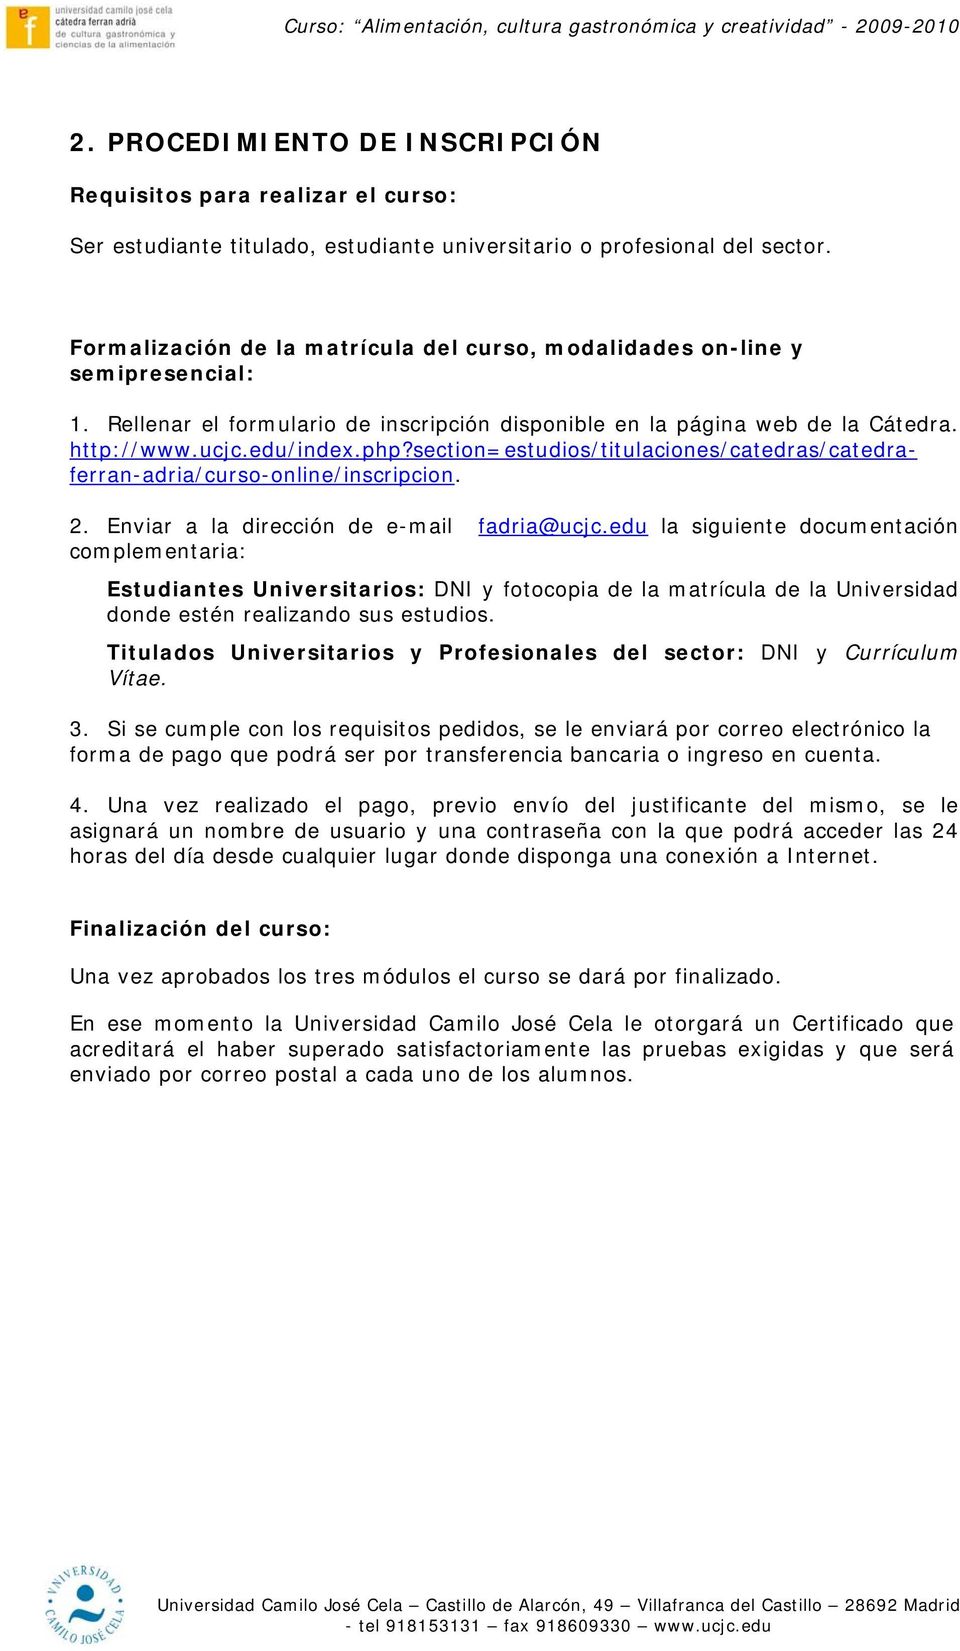 section=estudios/titulaciones/catedras/catedraferran-adria/curso-online/inscripcion. 2. Enviar a la dirección de e-mail fadria@ucjc.